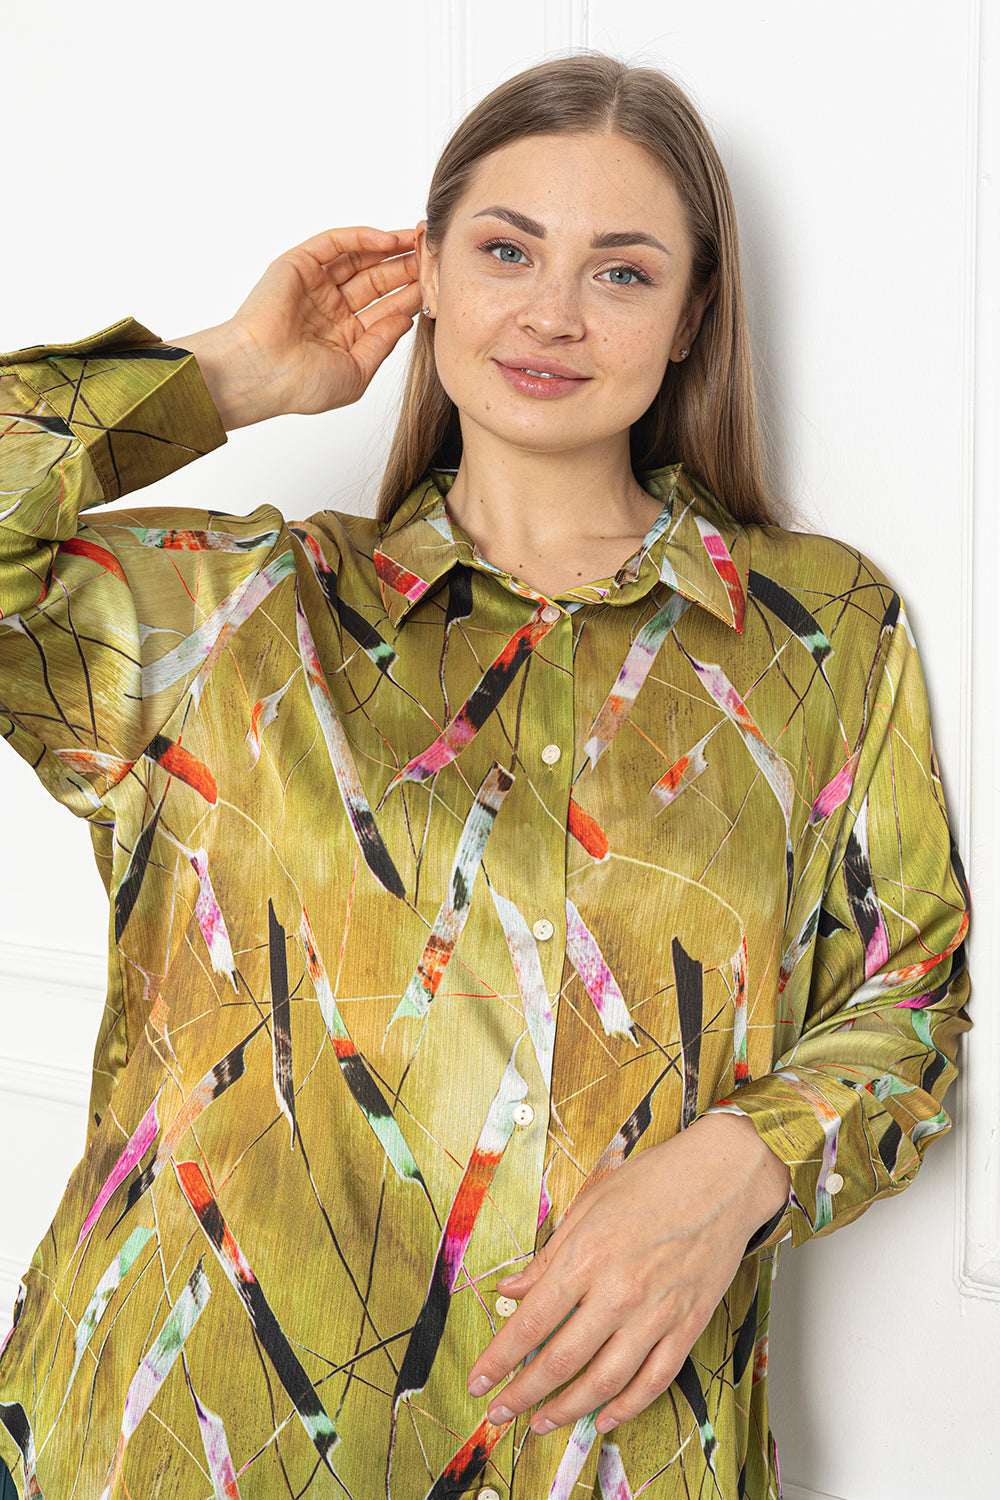 Γυναικείο πουκάμισο πολυτέλειας σε μεγάλα μεγέθη - Φιγούρες Πράσινο 